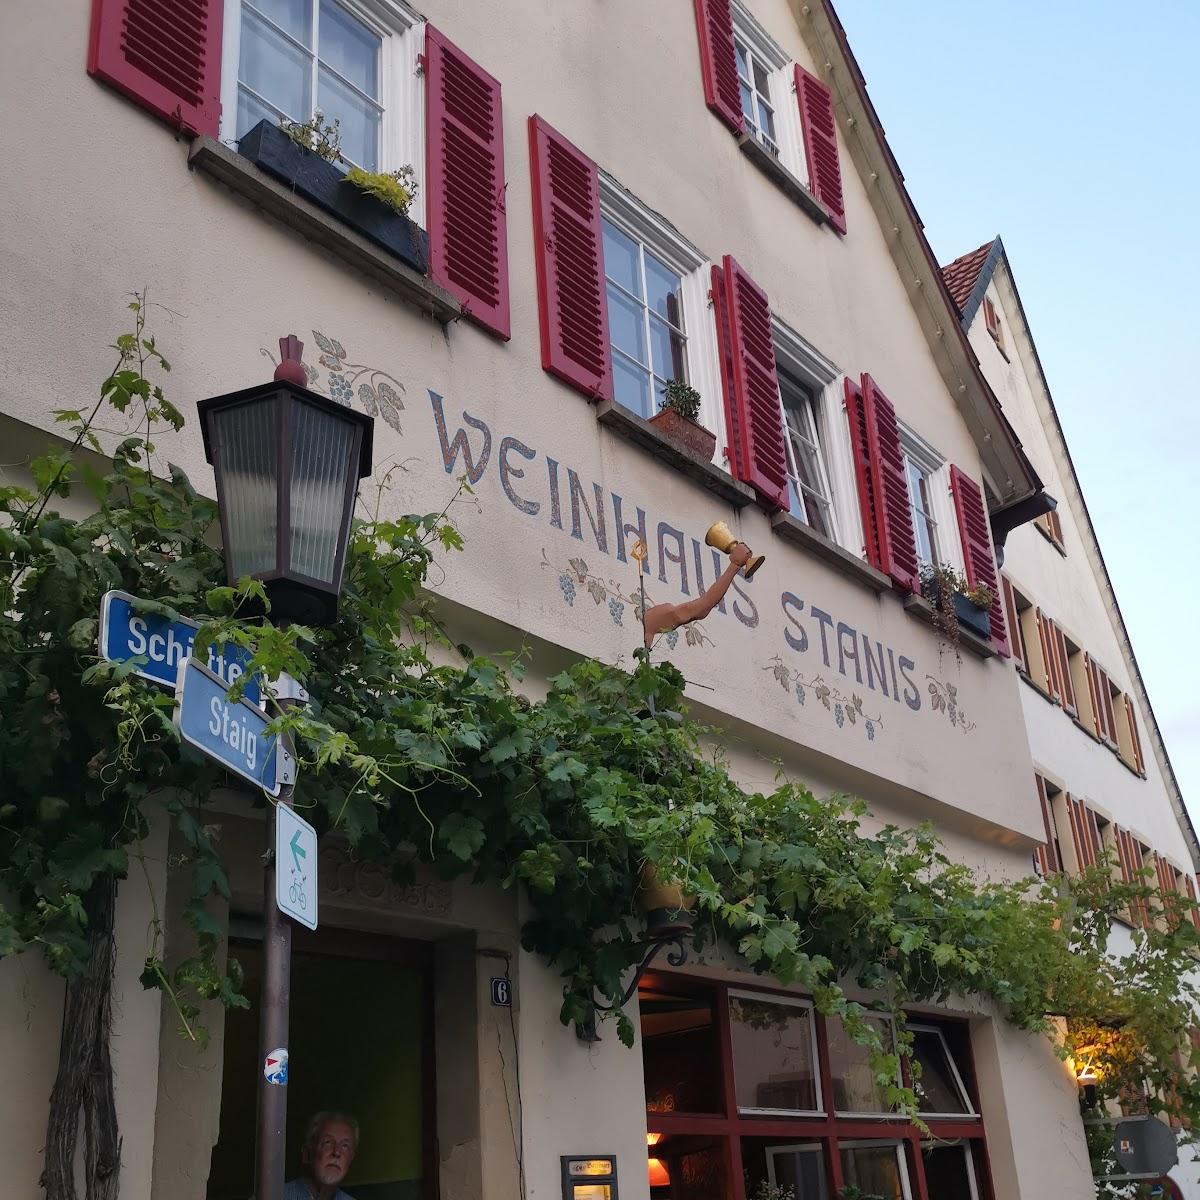 Restaurant "Weinhaus Stanis" in Rottenburg am Neckar